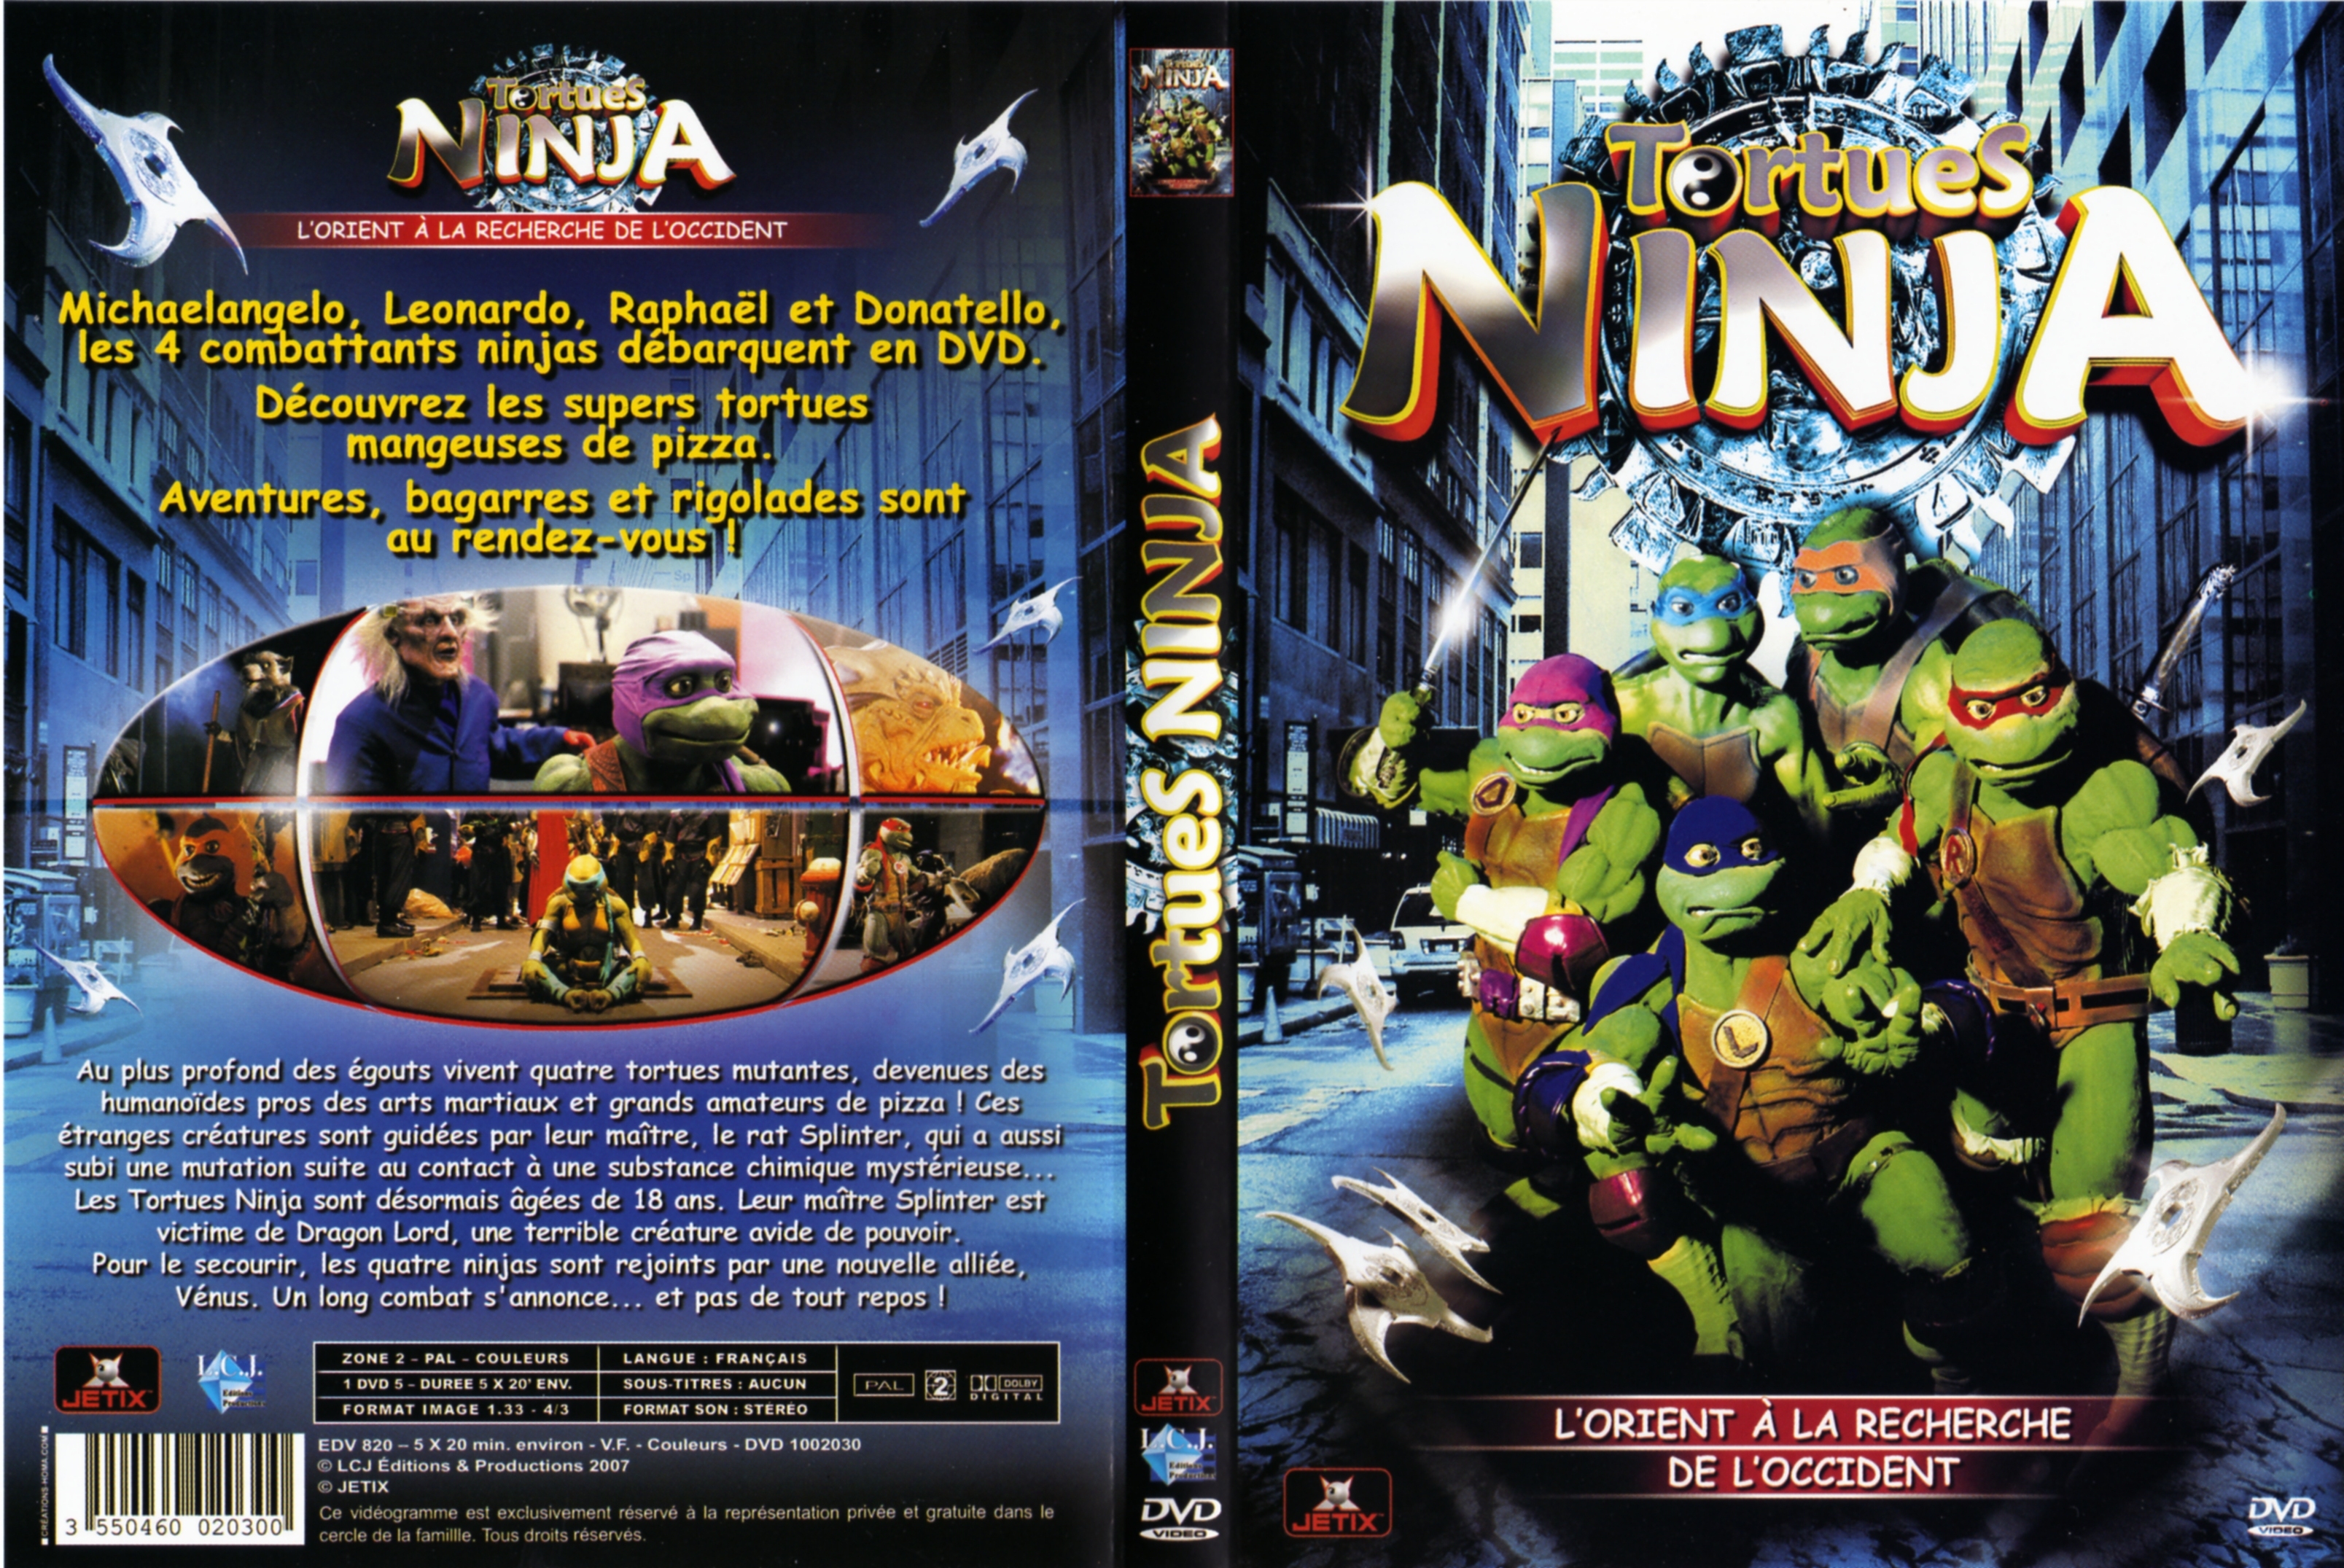 Jaquette DVD Tortues ninja - l